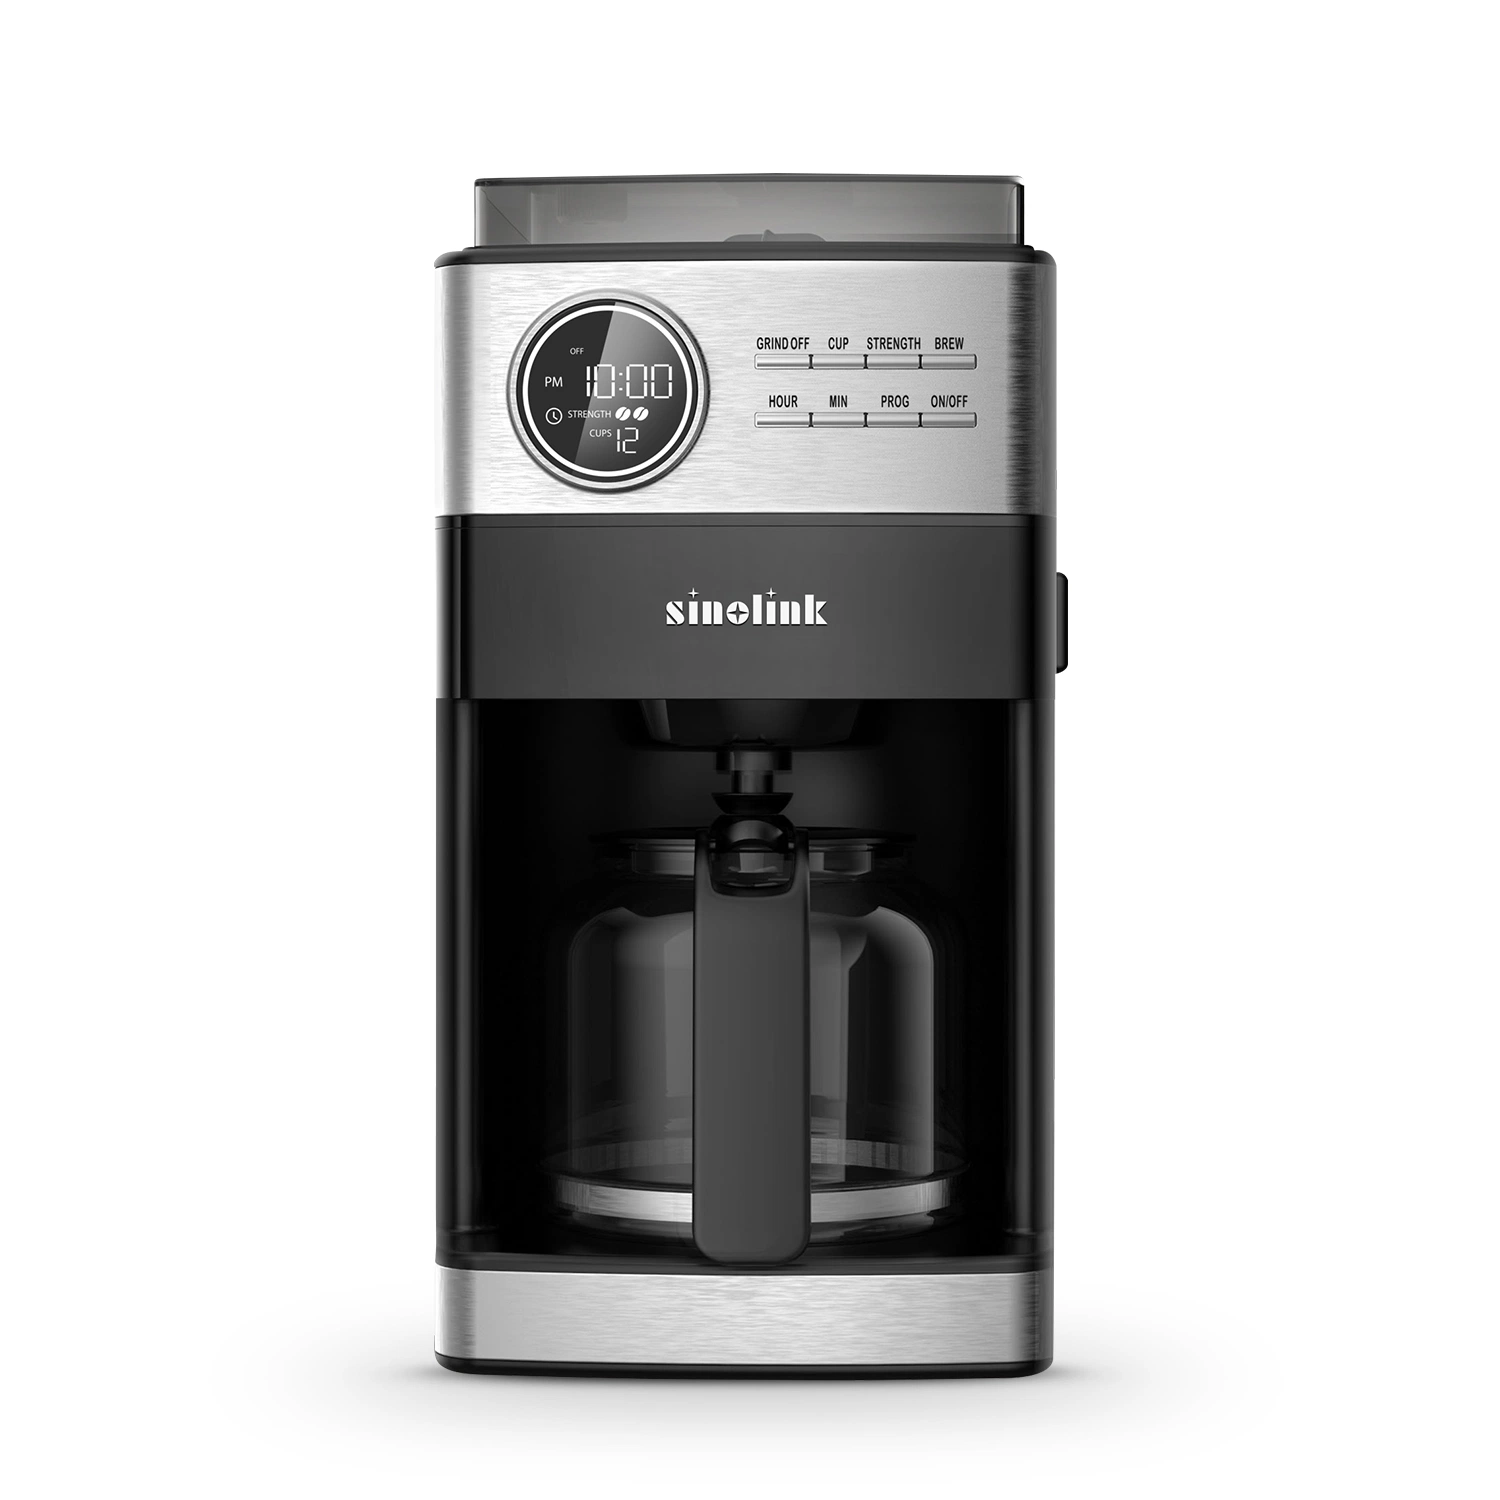 Máquina de café de 12 chávenas com moagem automática e preparação programável